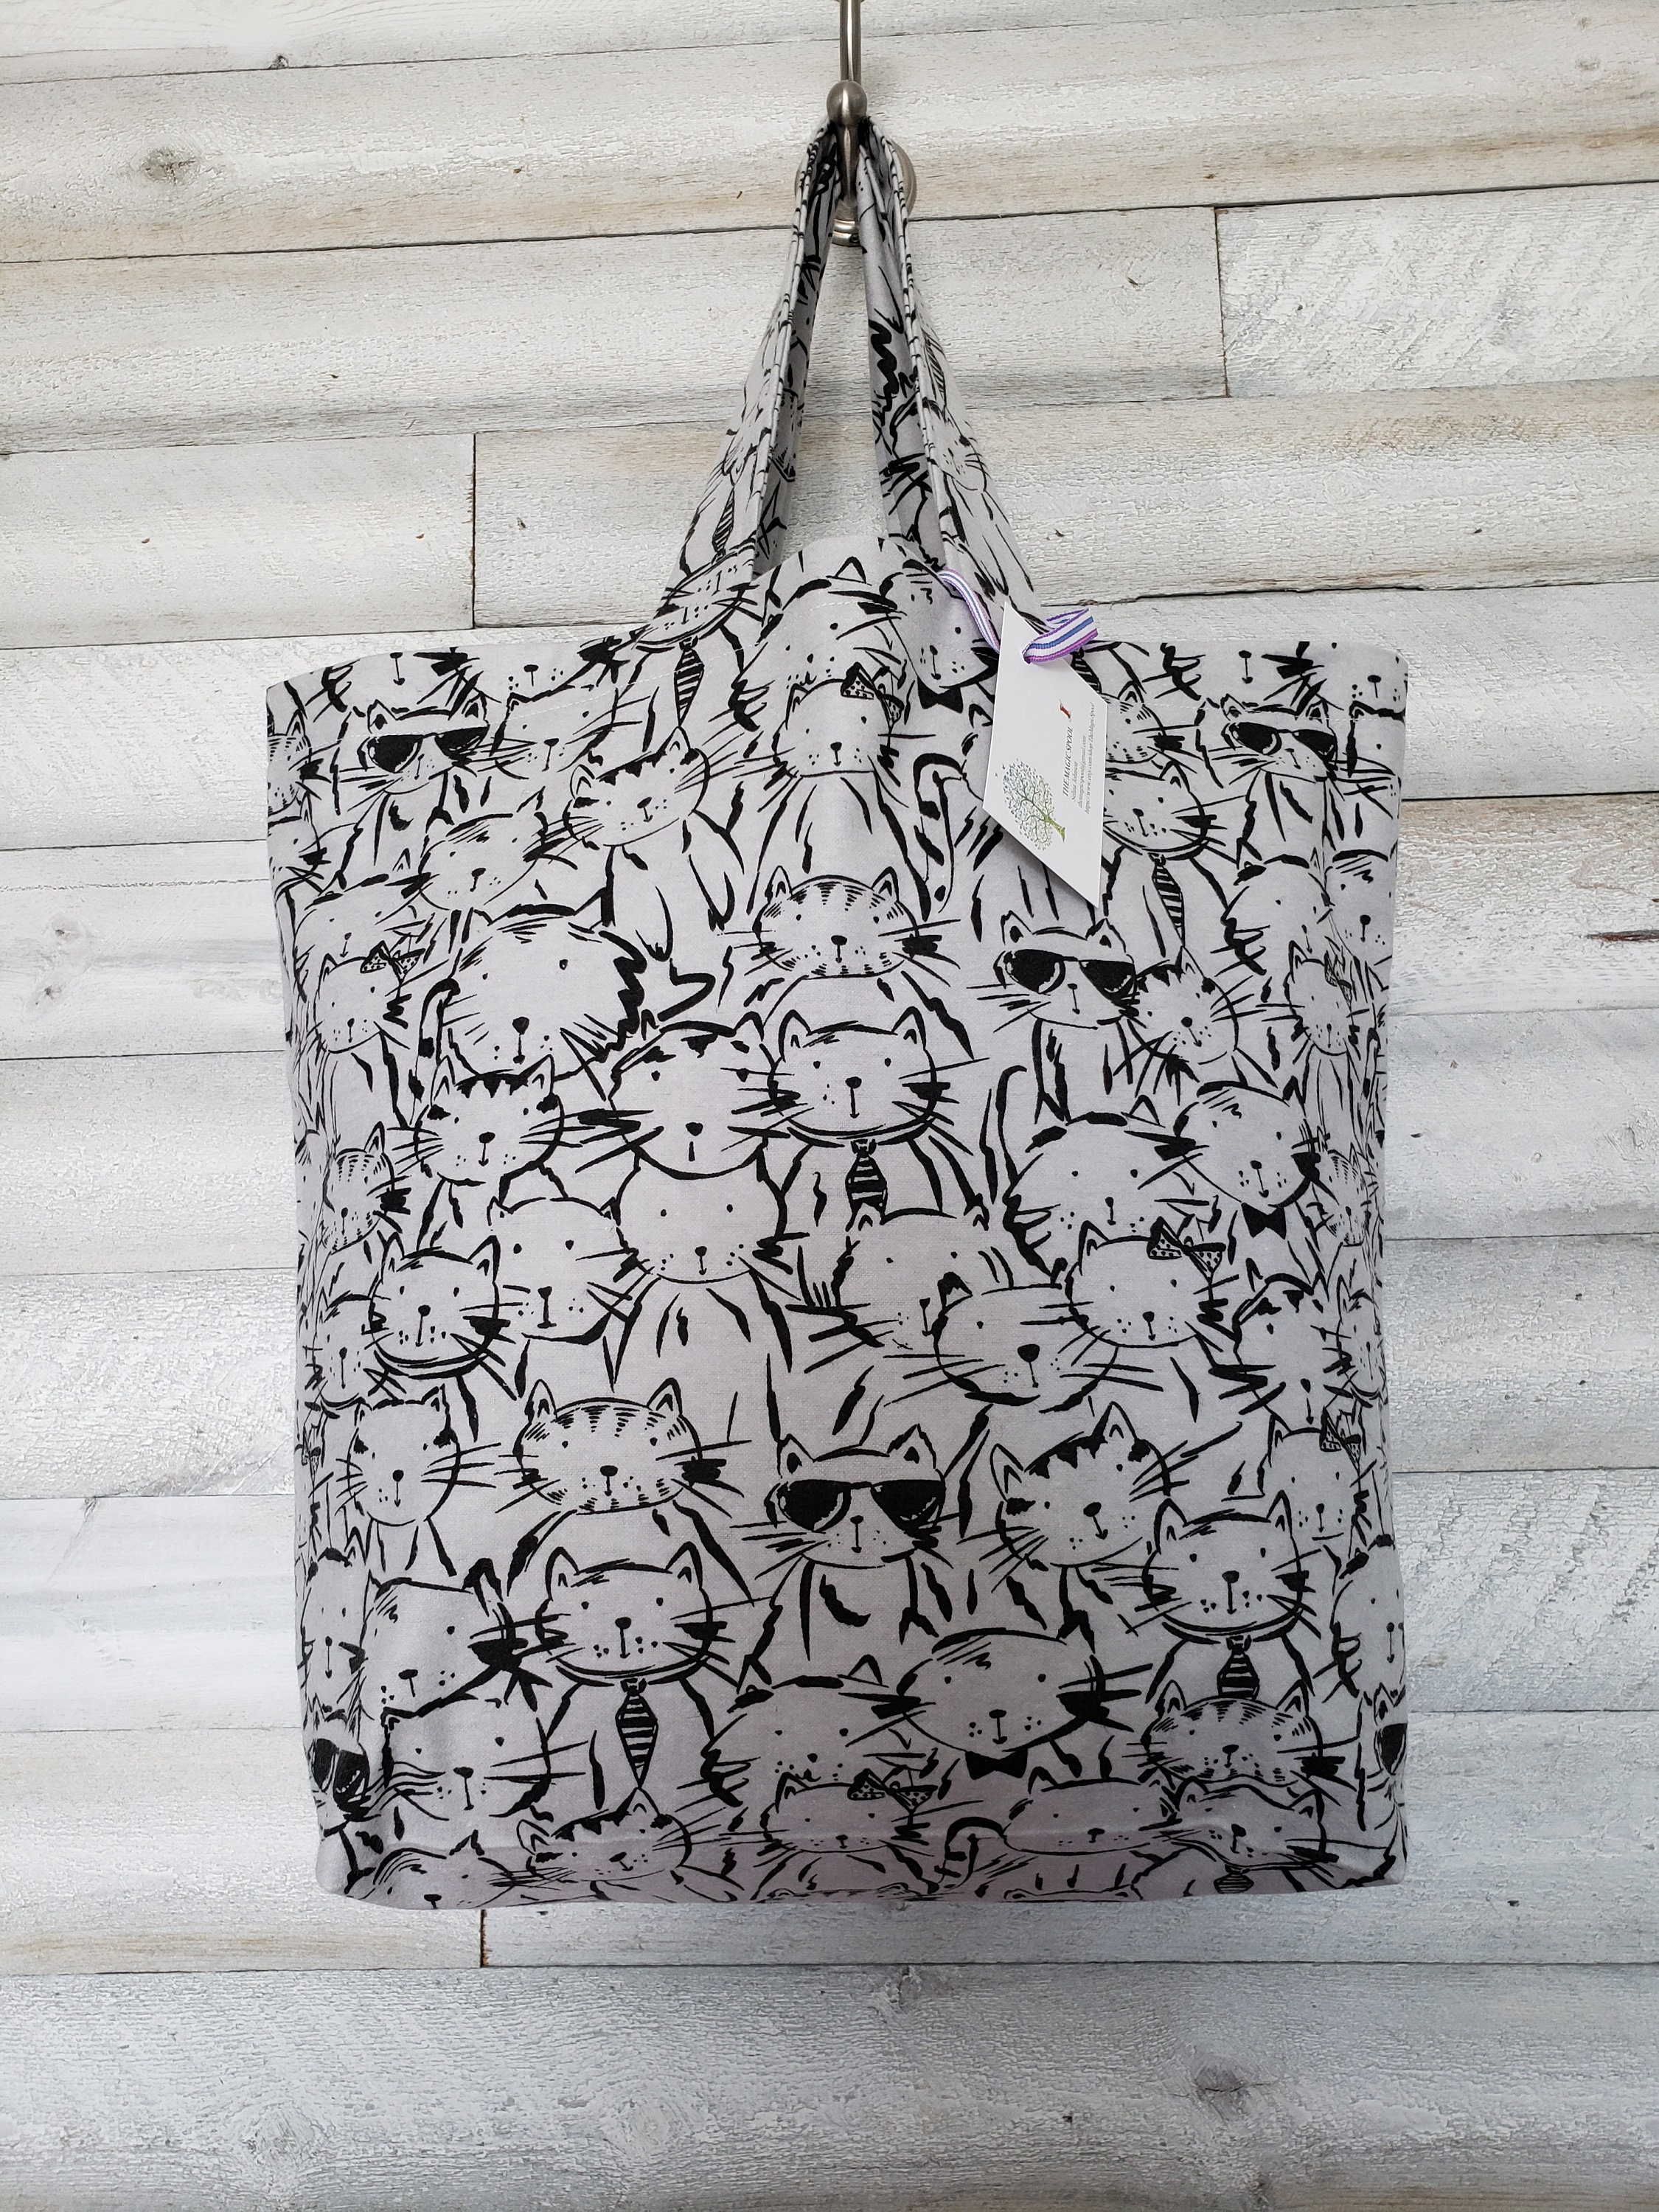 Ikea SACKKARRA Shopping bag tote off-white/black/brown, 744 oz